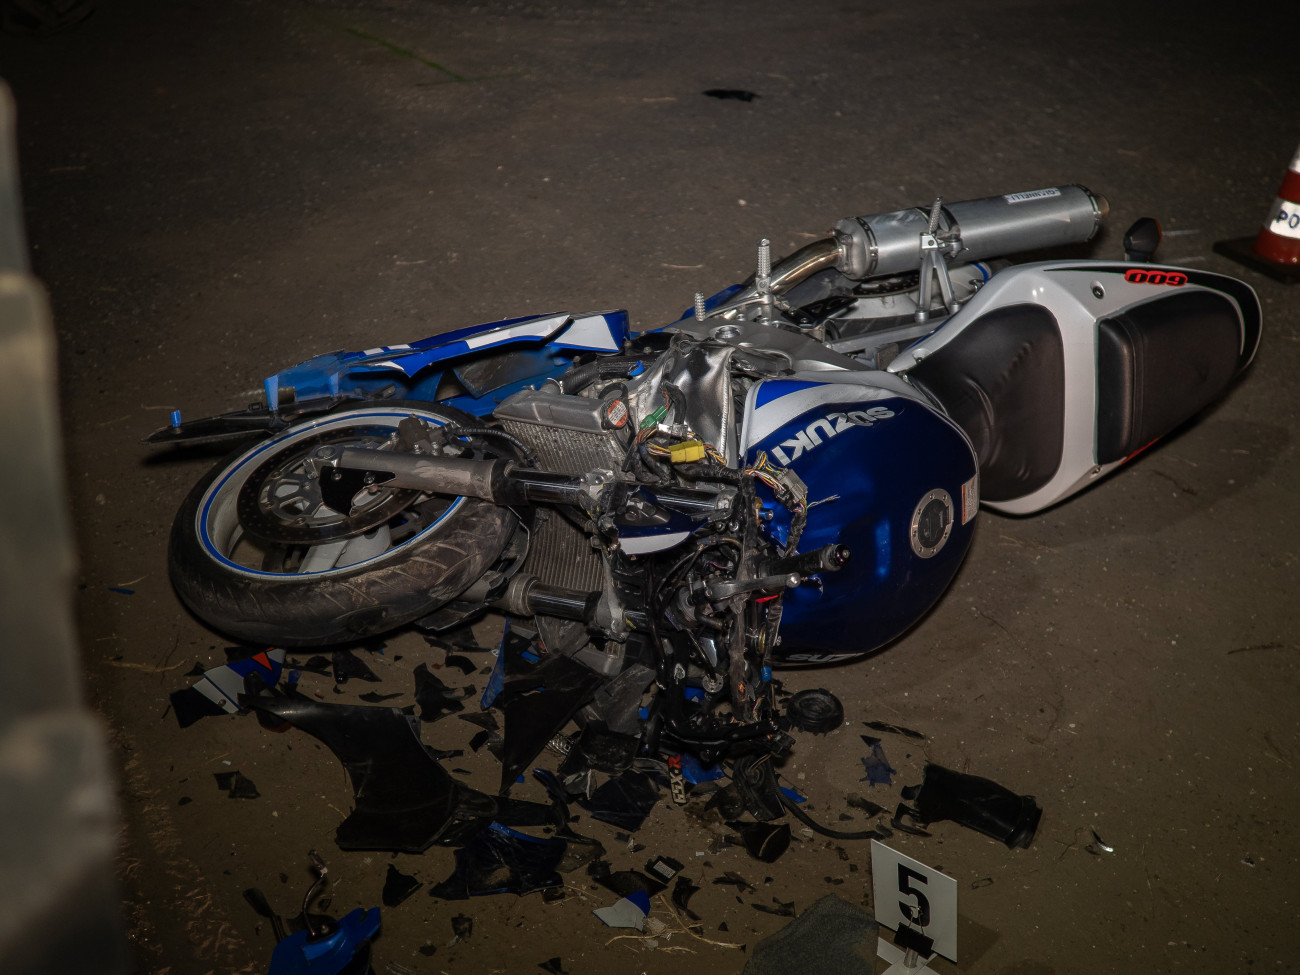 Öttömös, 2019. október 11.
Ütközésben összeroncsolódott motorkerékpár Öttömösön 2019. október 11-én. Egy ember meghalt, egy pedig megsérült, amikor a motorkerékpár egy traktor ütközött össze.
MTI/Donka Ferenc